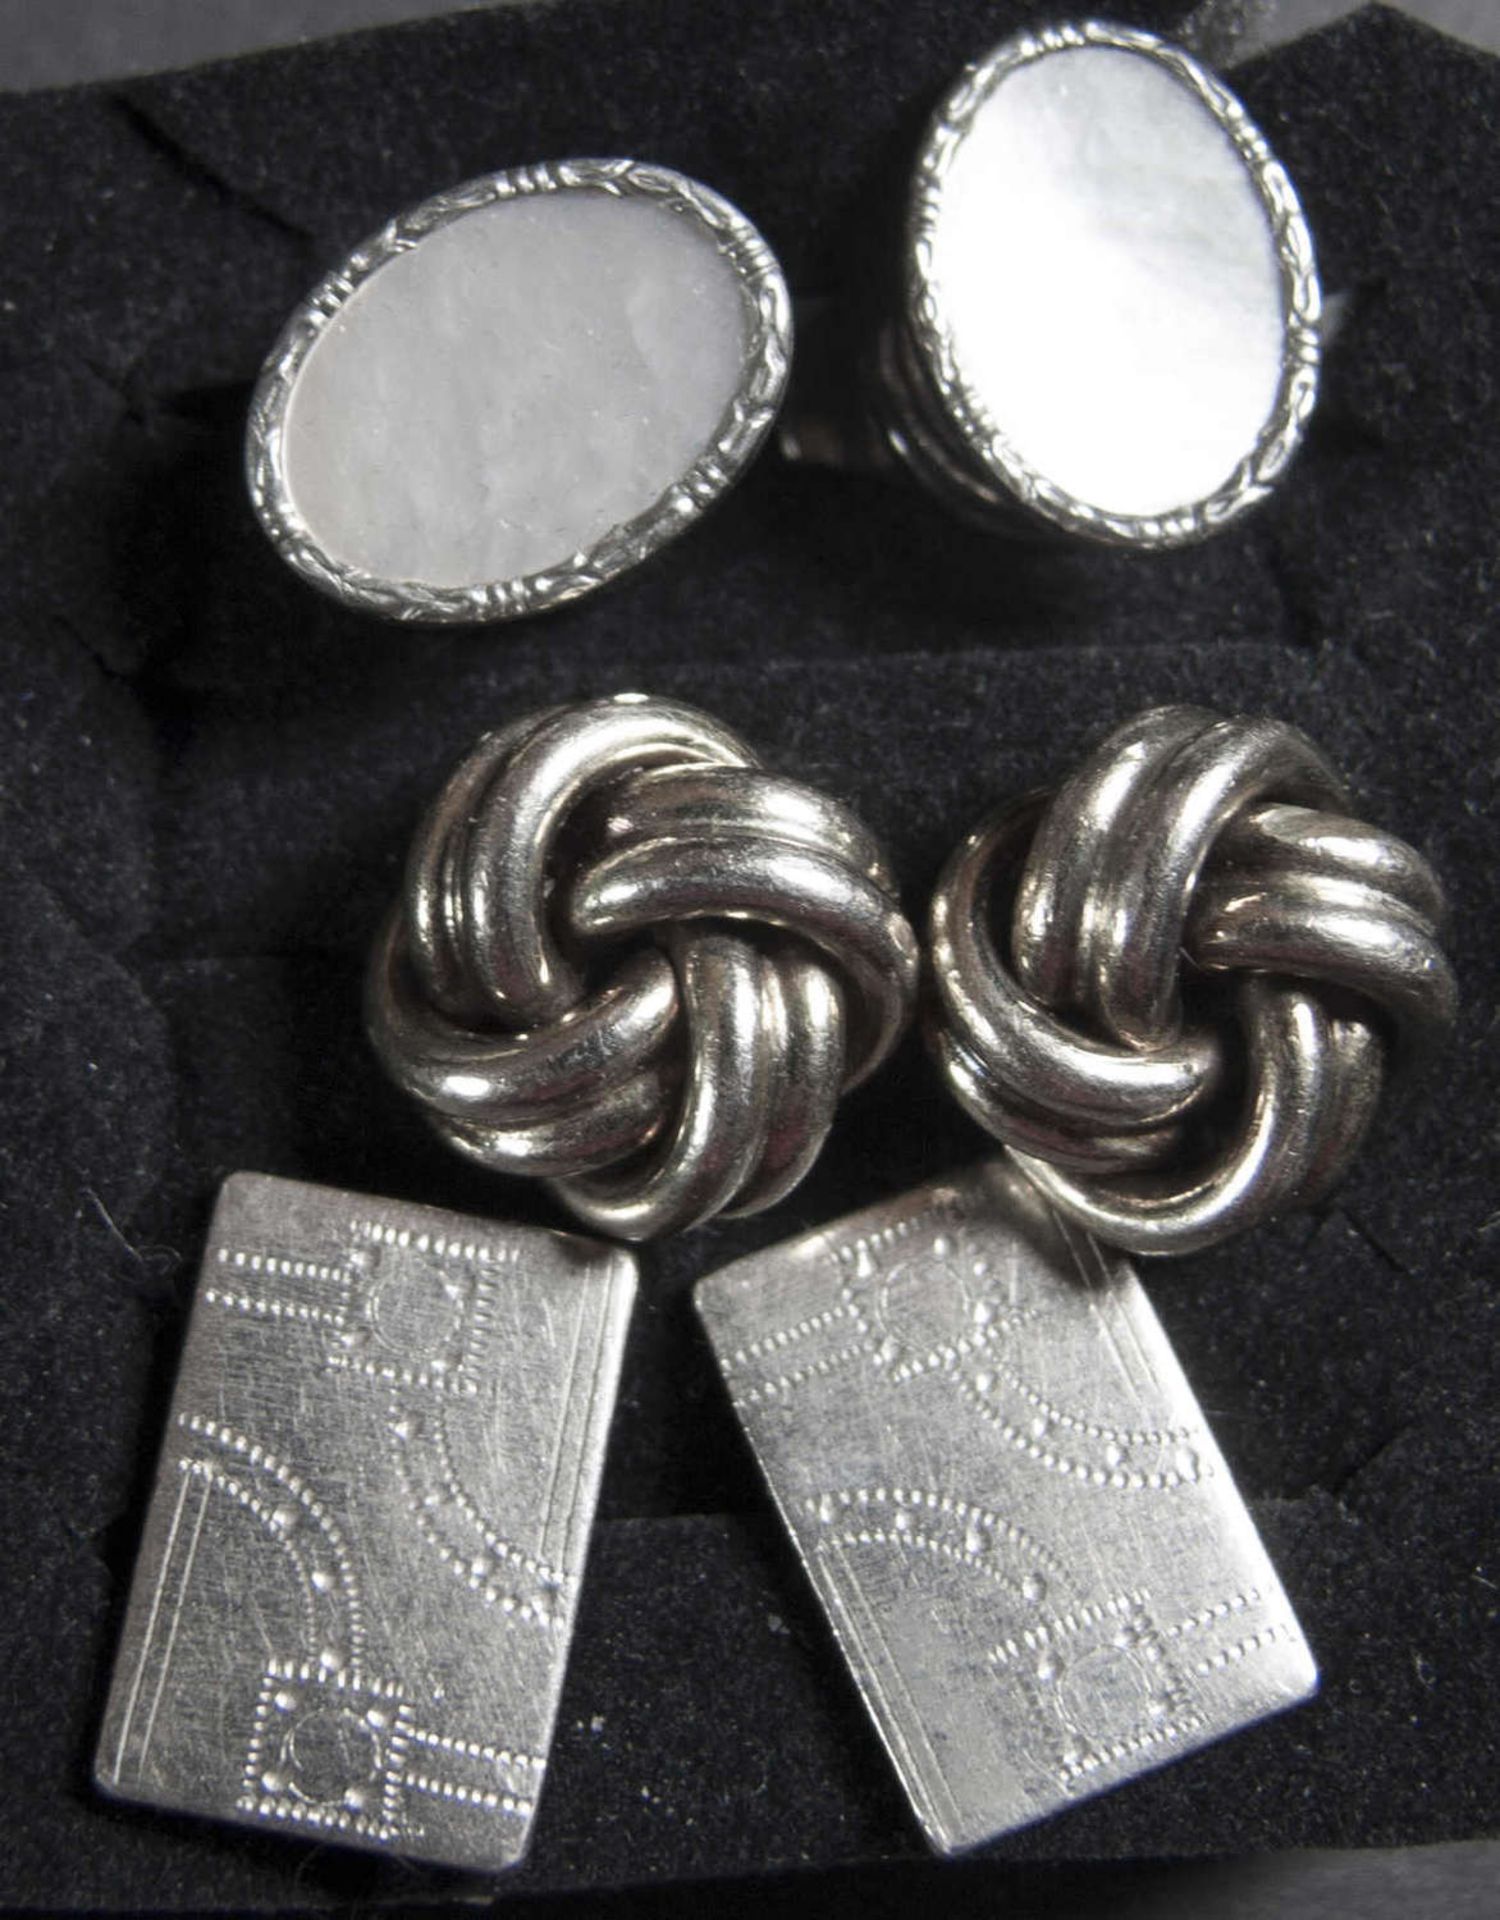 Drei Paar Damen - Manschetten - Knöpfe. 1 x perlmuttfarbig, 1 x in Knotenform und 1 x fein